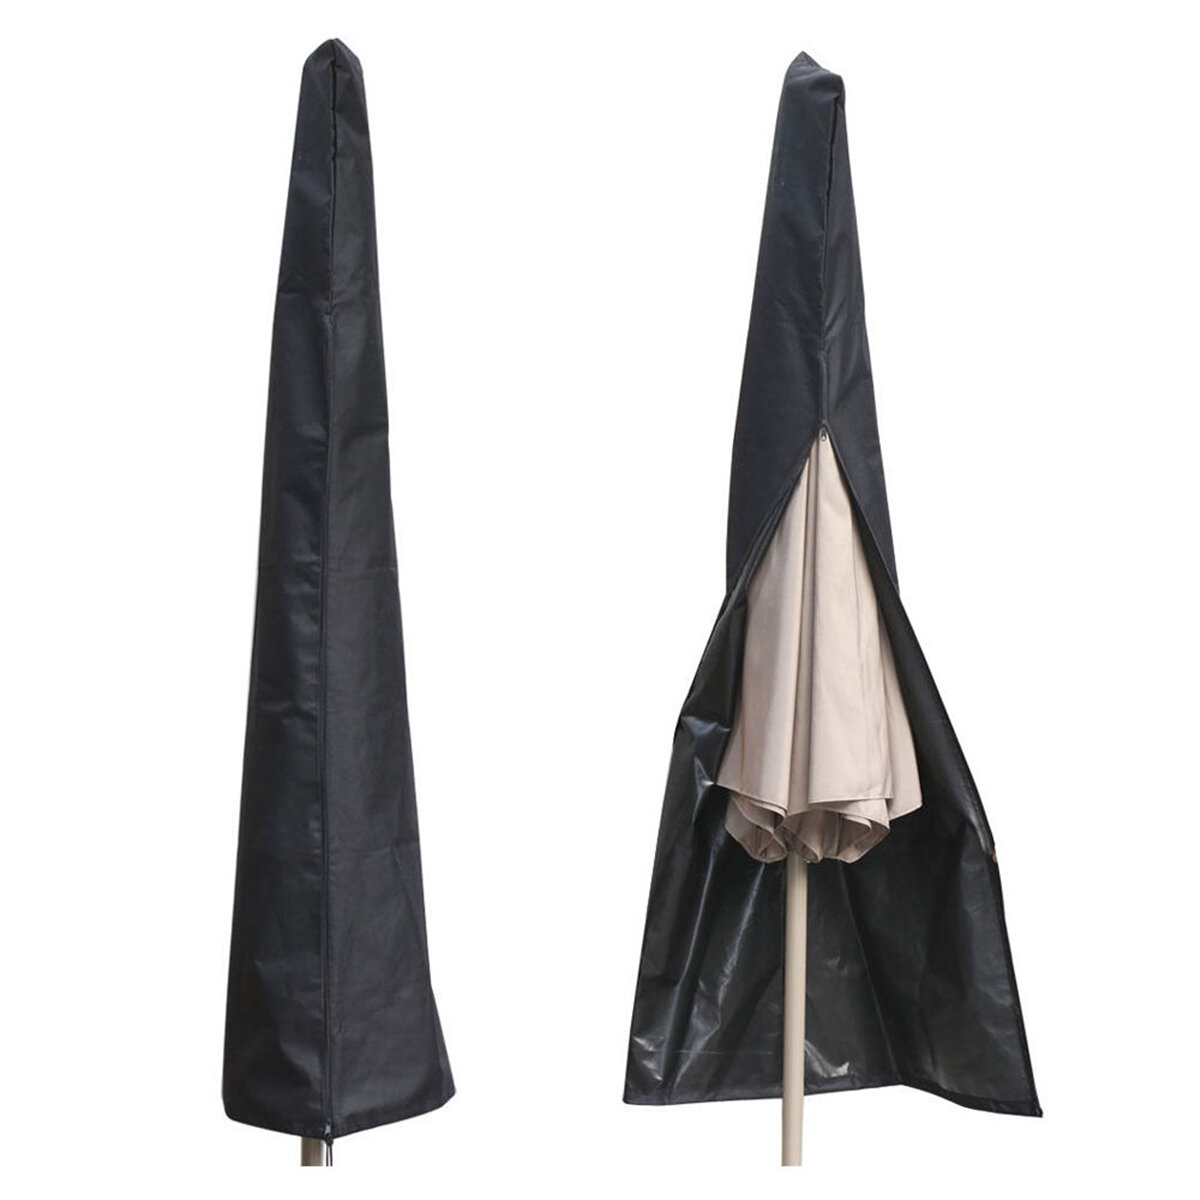 Buiten waterdichte Patio Umbrella bedekkingsgraad Shade beschermende Zonnescherm Zon Shelter Shed Zipper Bag